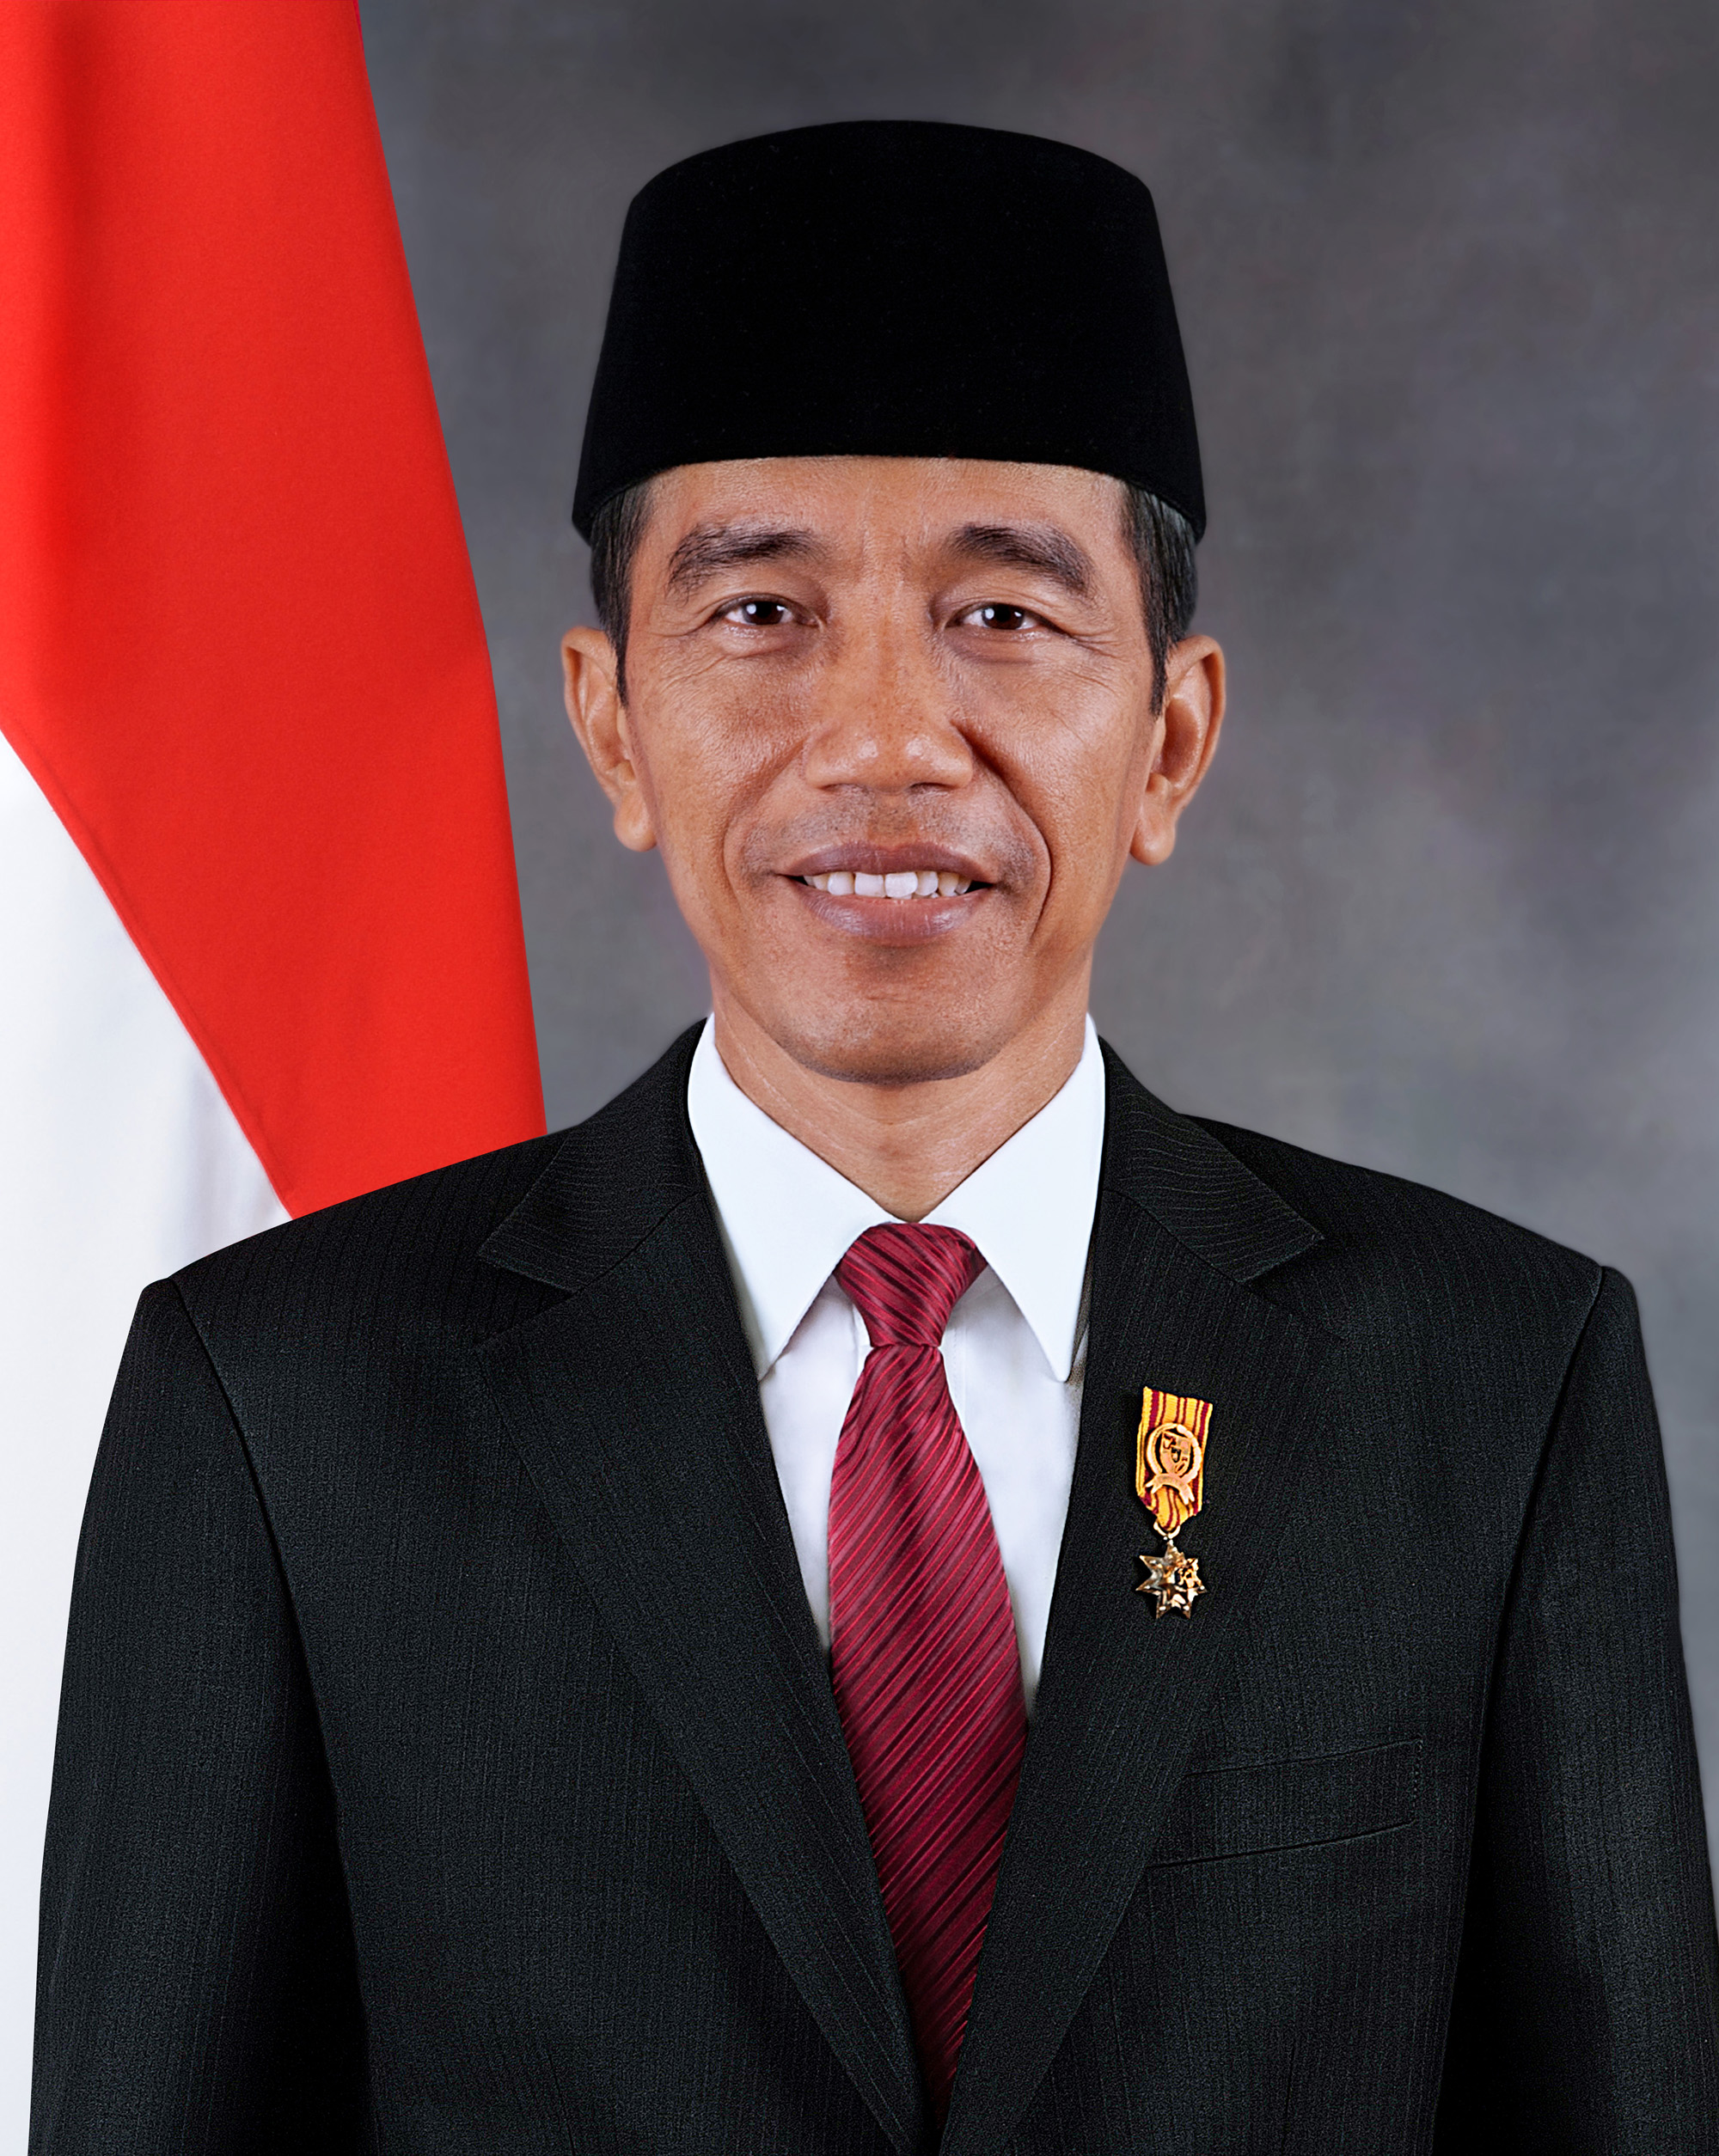 Il presidente indonesiano Widodo vola prima a Kiev e poi a Mosca proponendosi come nuovo mediatore mondiale